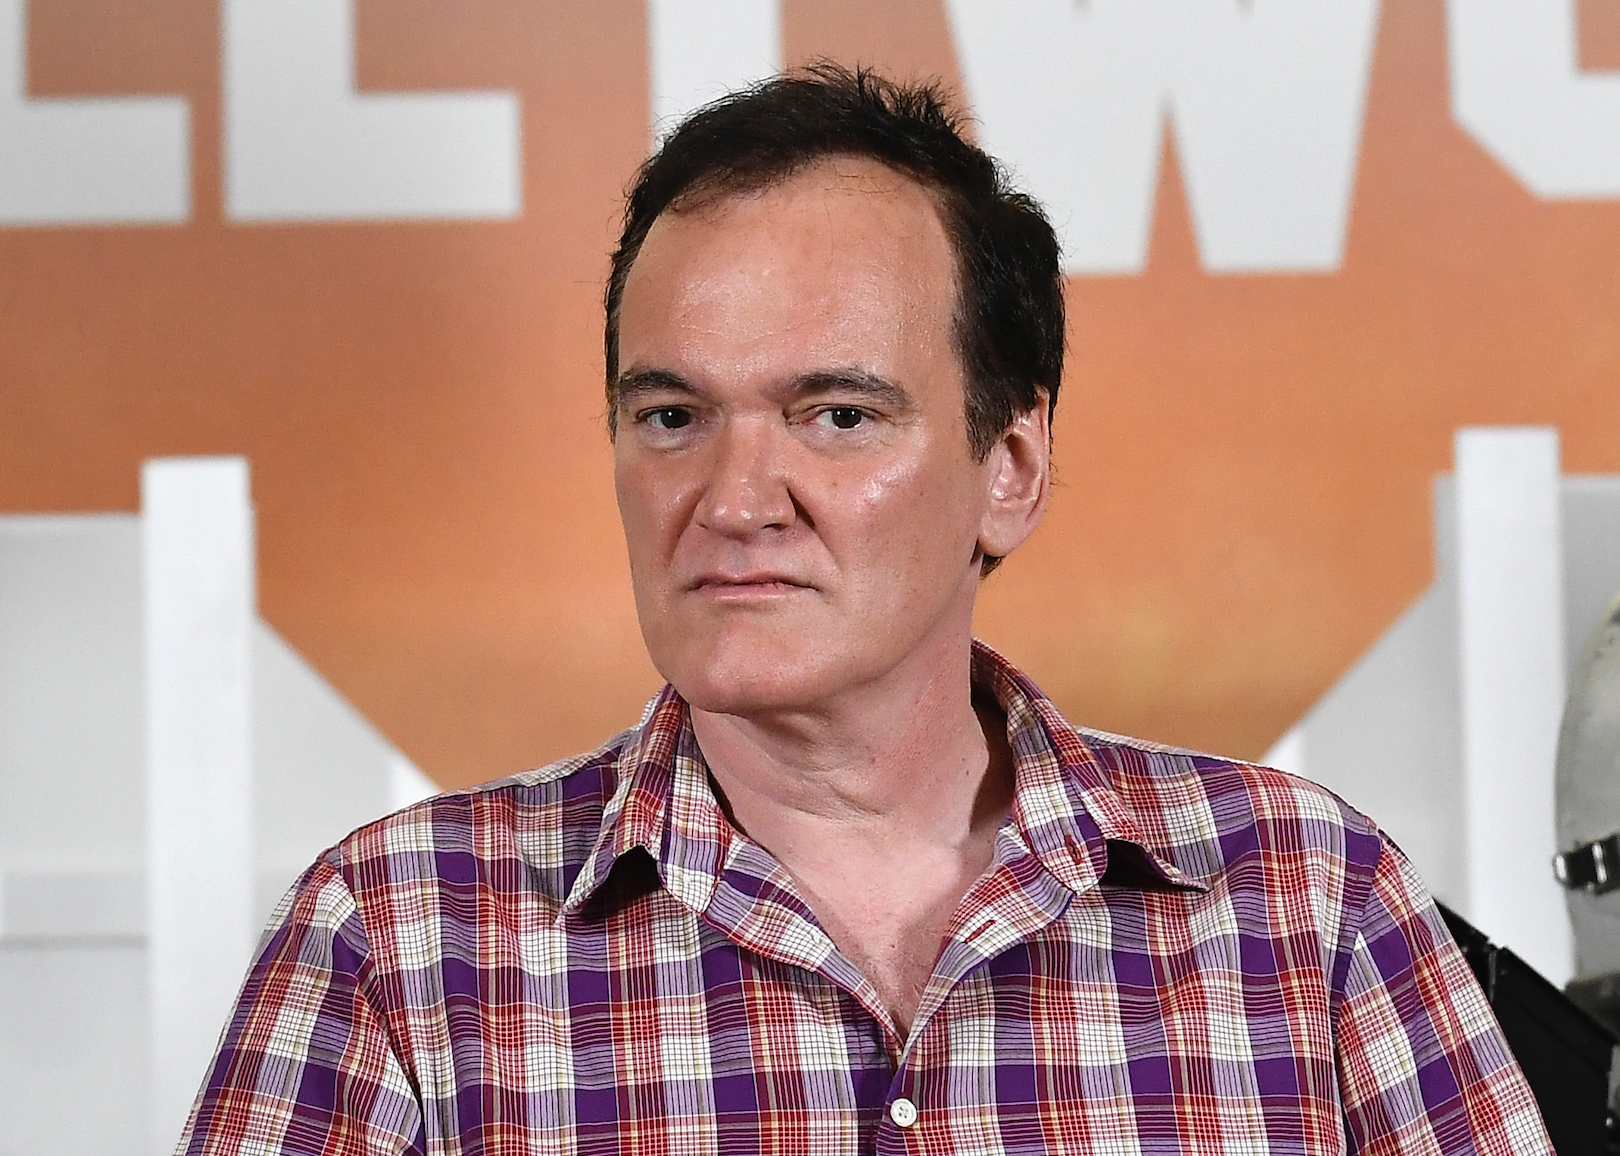 Quentin Tarantino in a plaid shirt.